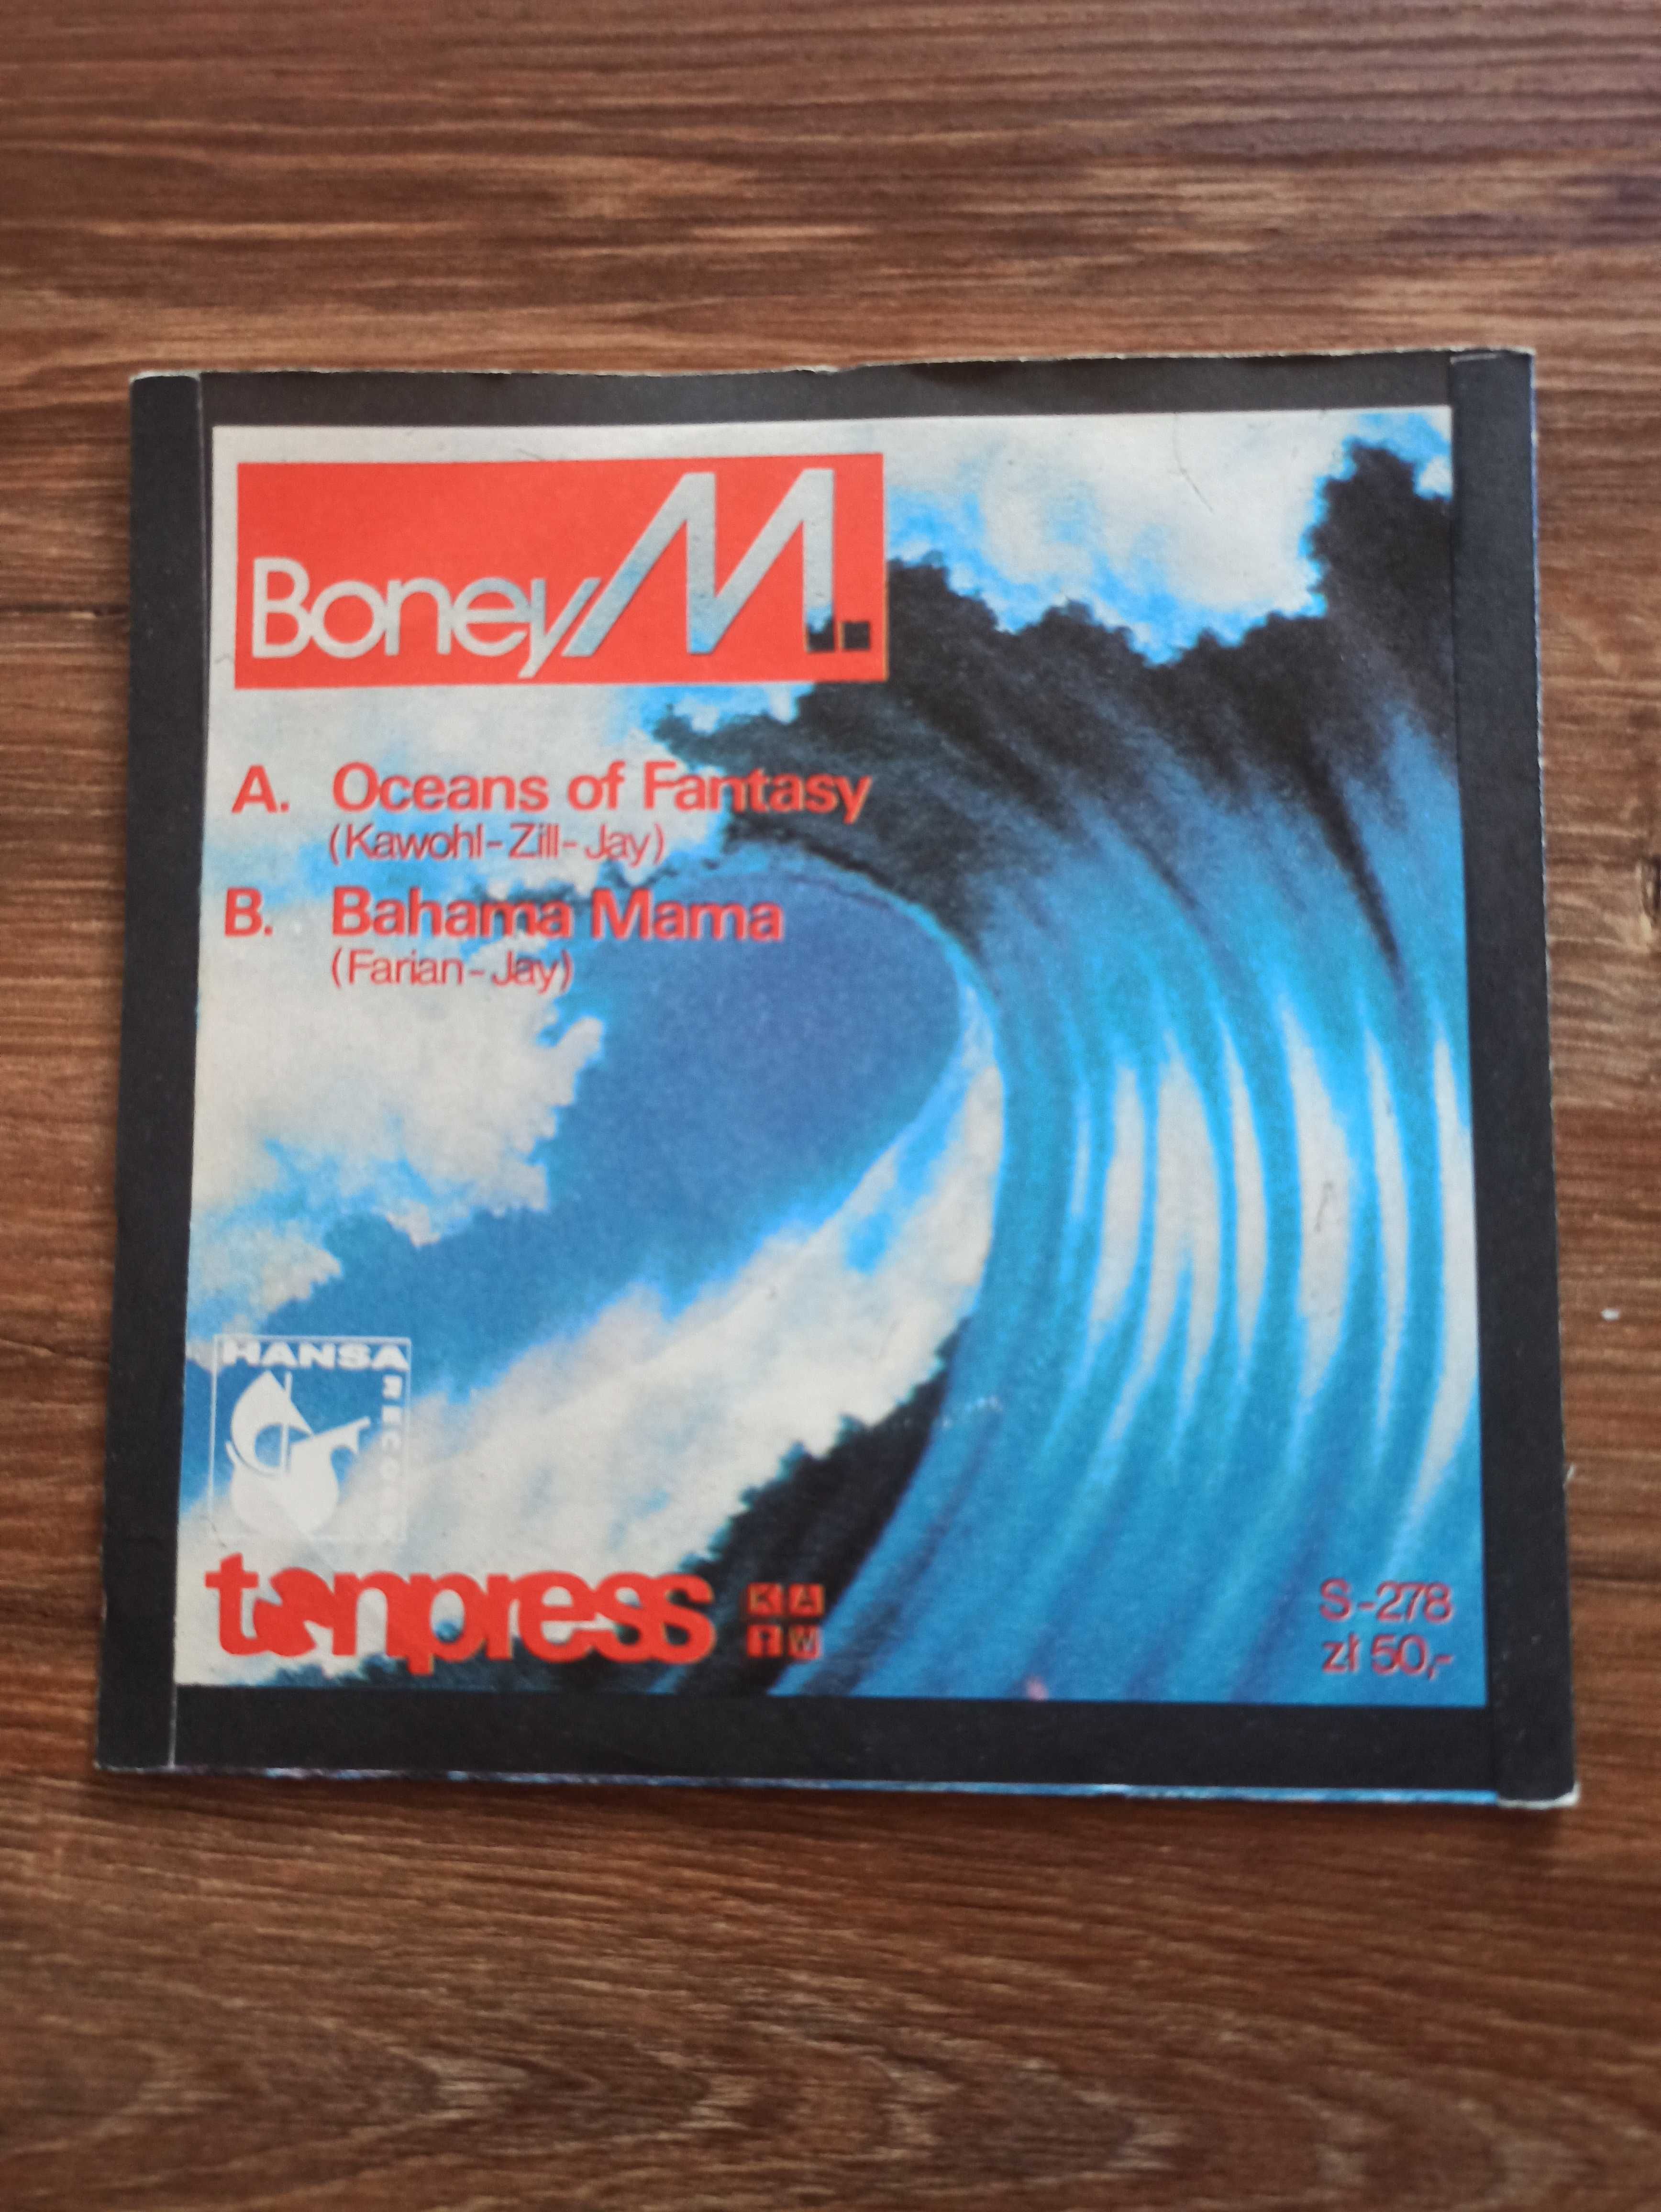 Winylowa płyta Boney M, używana